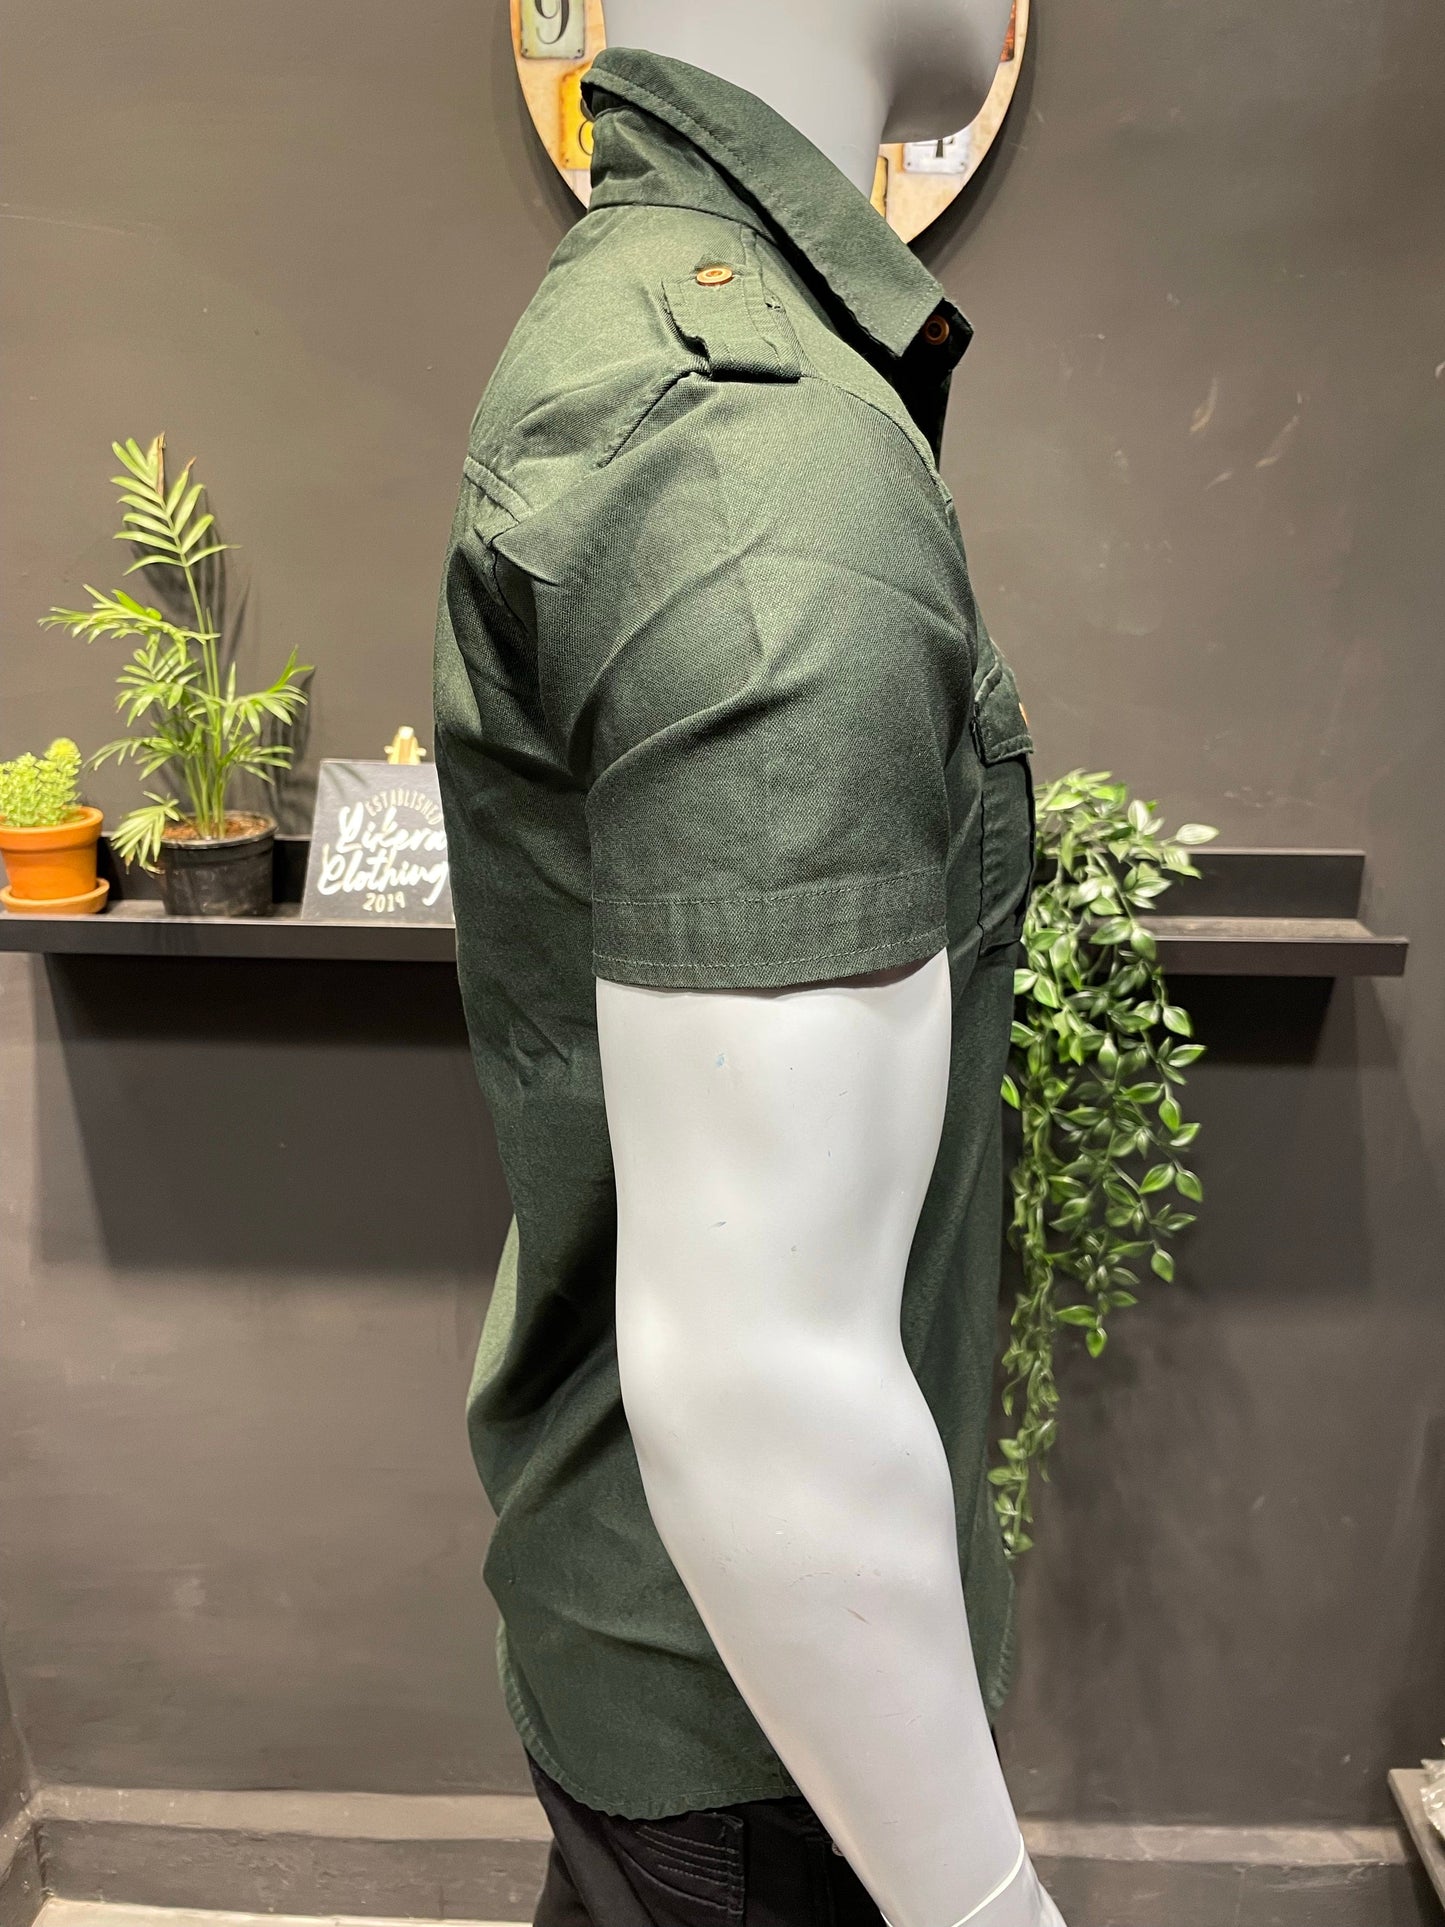 Olive Lycra Double Pocket & Shoulder Flaps Shirt